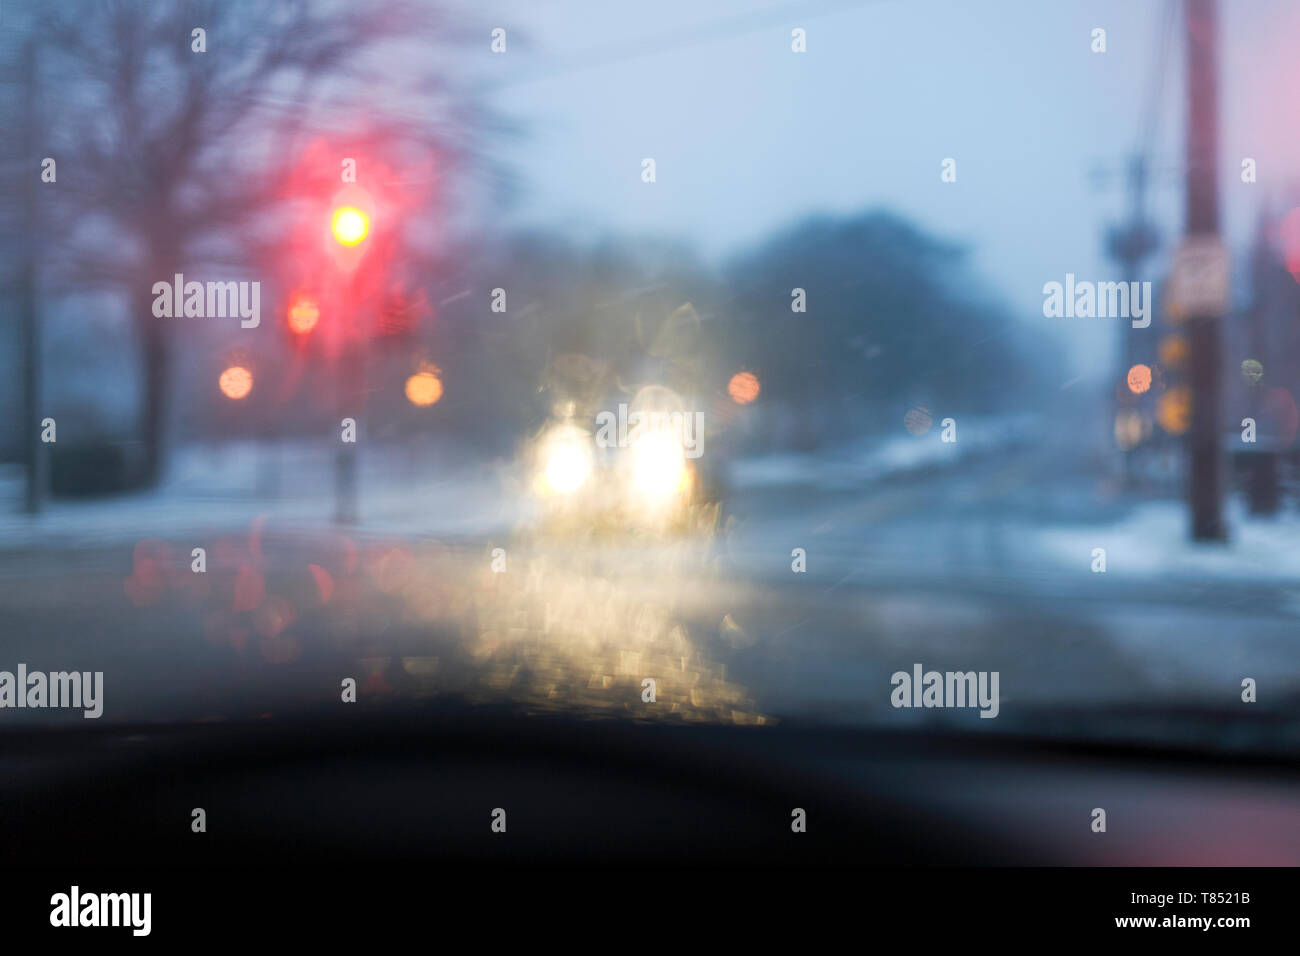 Une route par mauvais temps, c'est vue à travers un pare-brise de voiture, les feux de circulation sur red, la pluie sur la fenêtre, de voiture. Banque D'Images